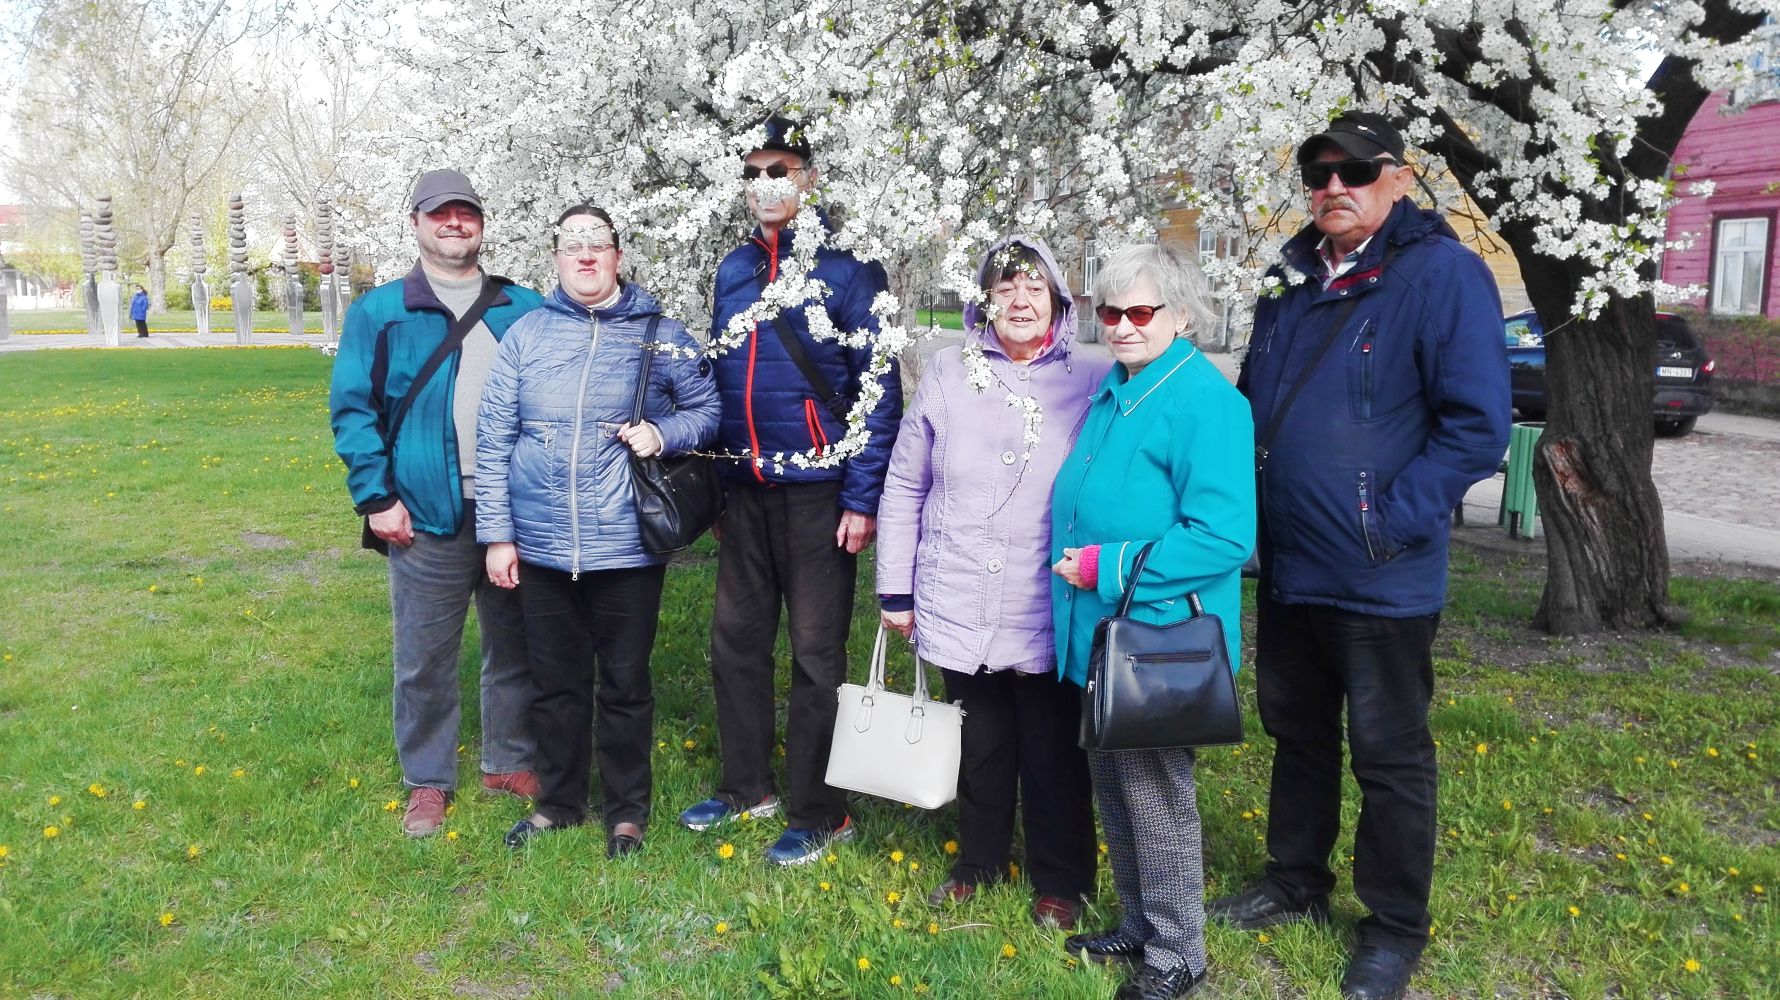  Saulainajā pavasara dienā grupa nolēma nofotografēties pie ziedošas aličas.